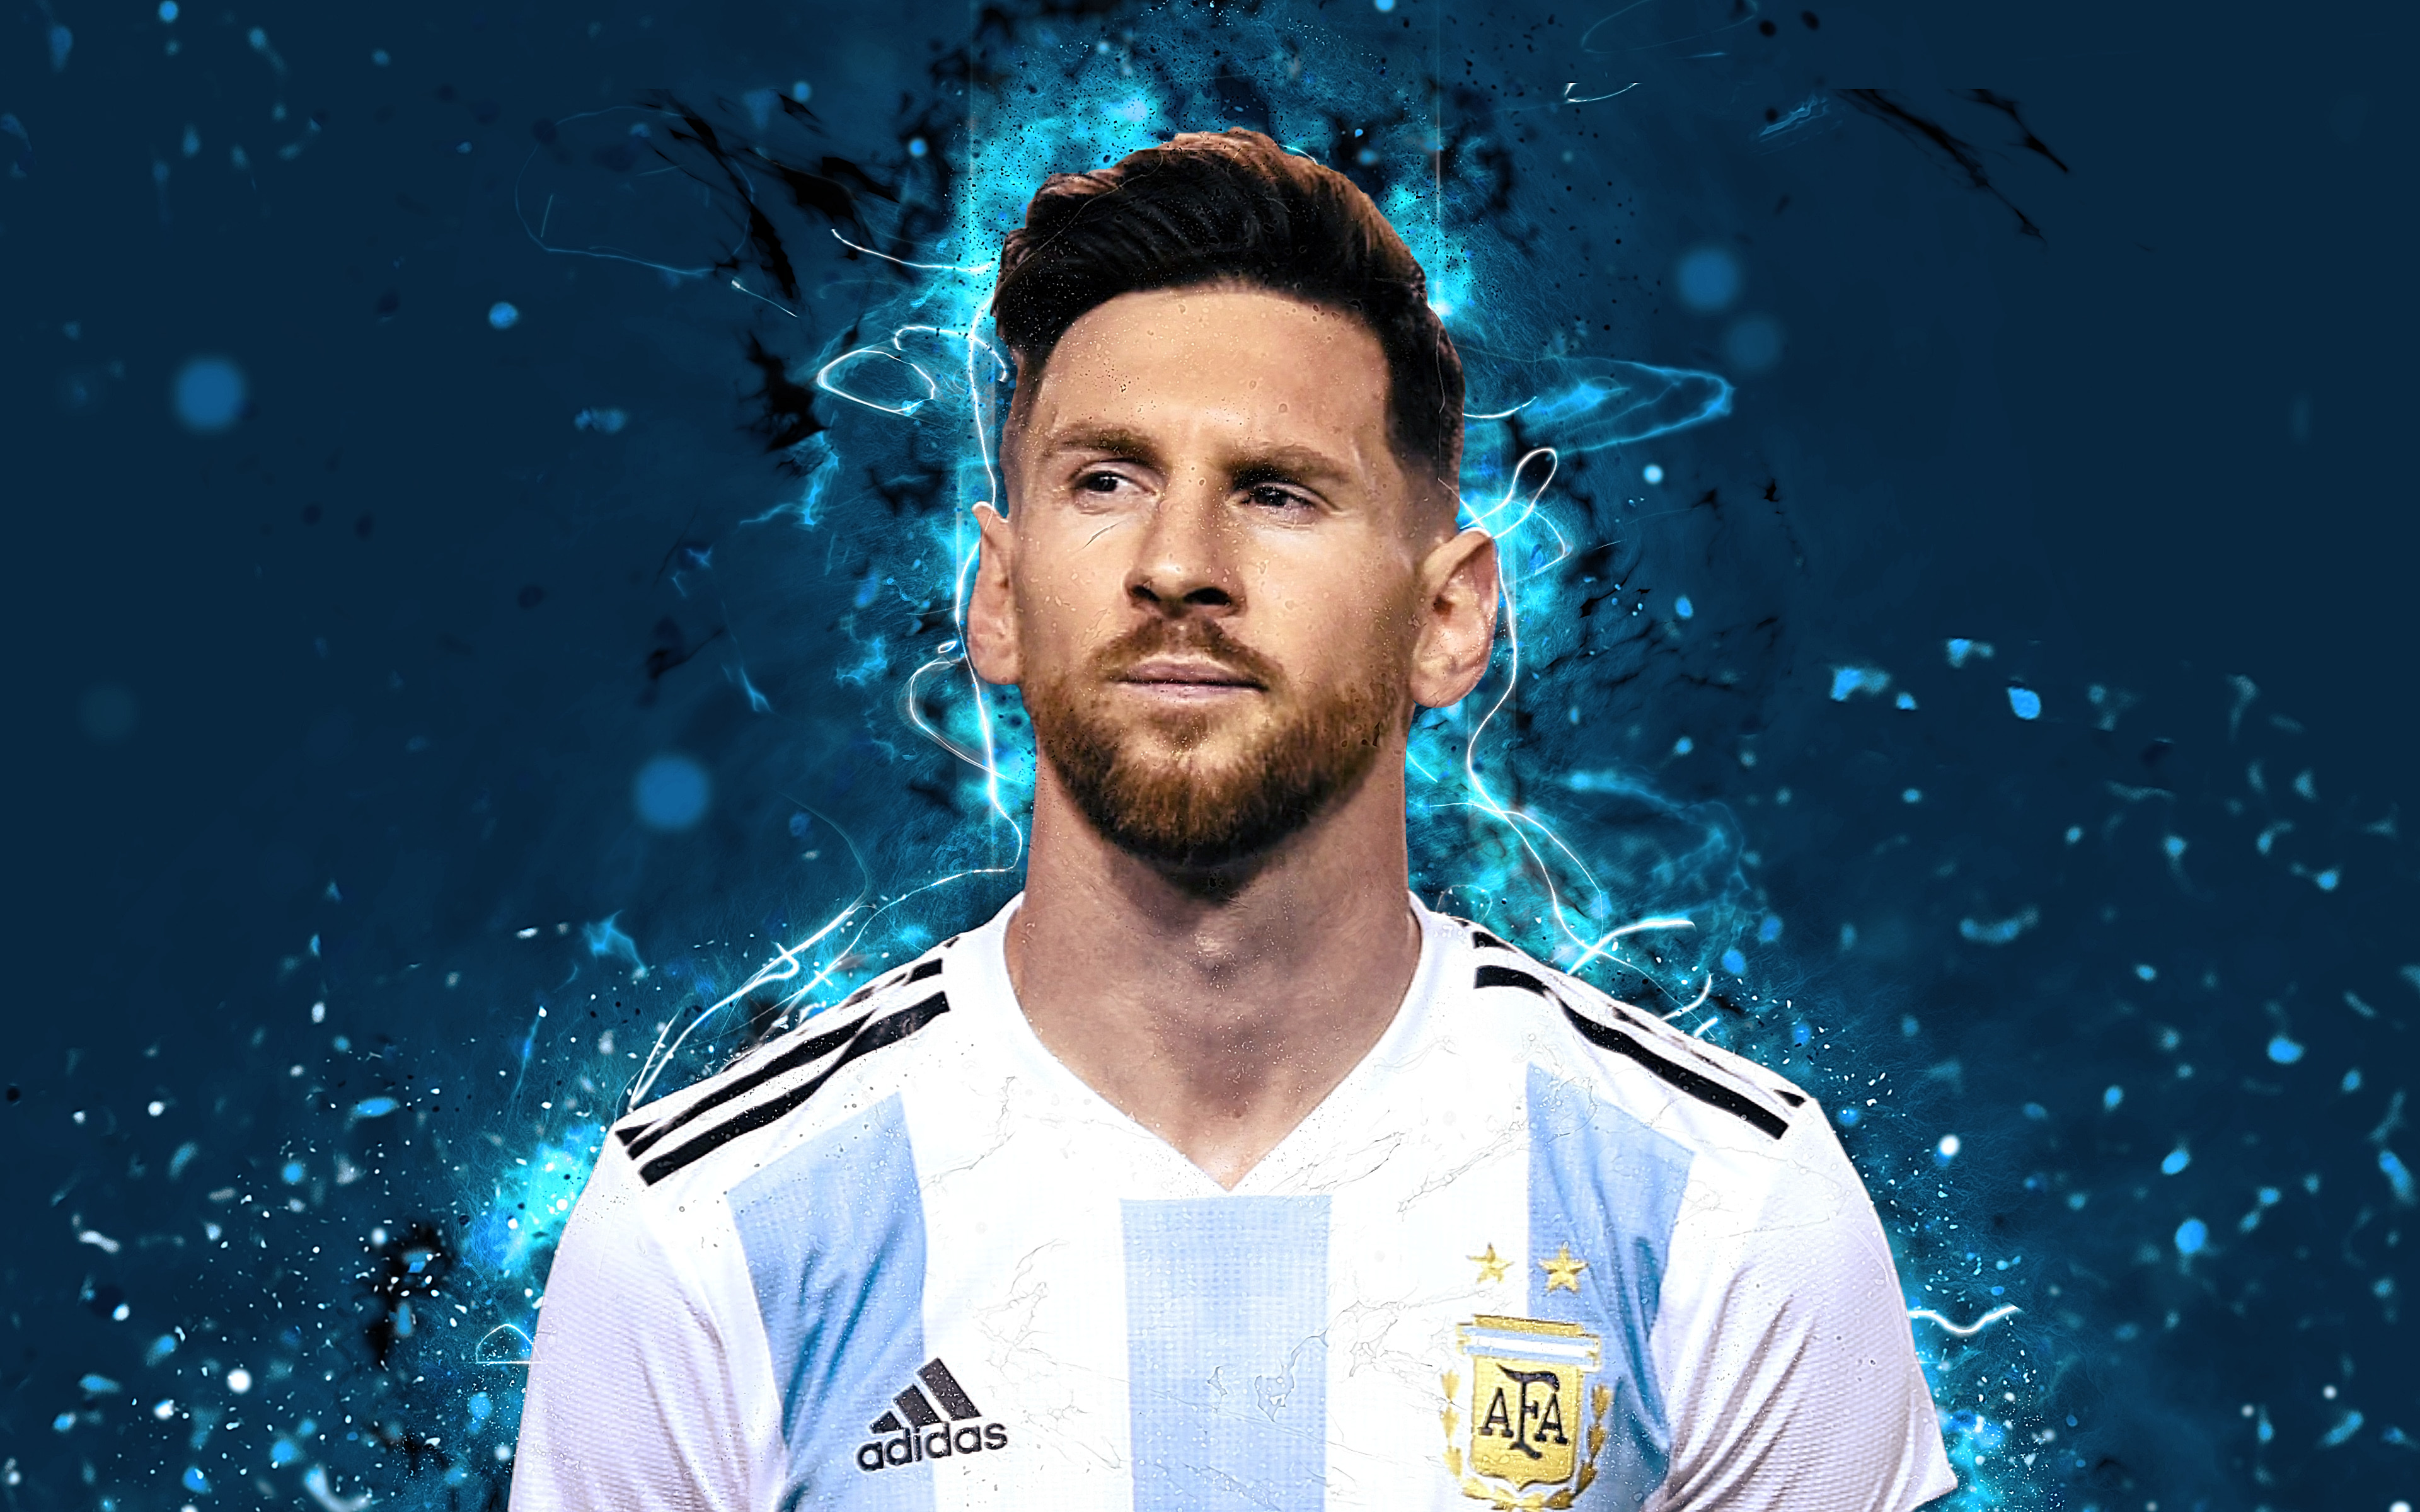 Hình nền Messi: Tải về những hình nền đẹp về cầu thủ vĩ đại Leo Messi để giúp cho máy tính của bạn trở nên sinh động và đáng yêu hơn. Hãy đem vẻ đẹp của Leo Messi vào không gian làm việc của bạn với những hình nền đầy sức sống và nghệ thuật.